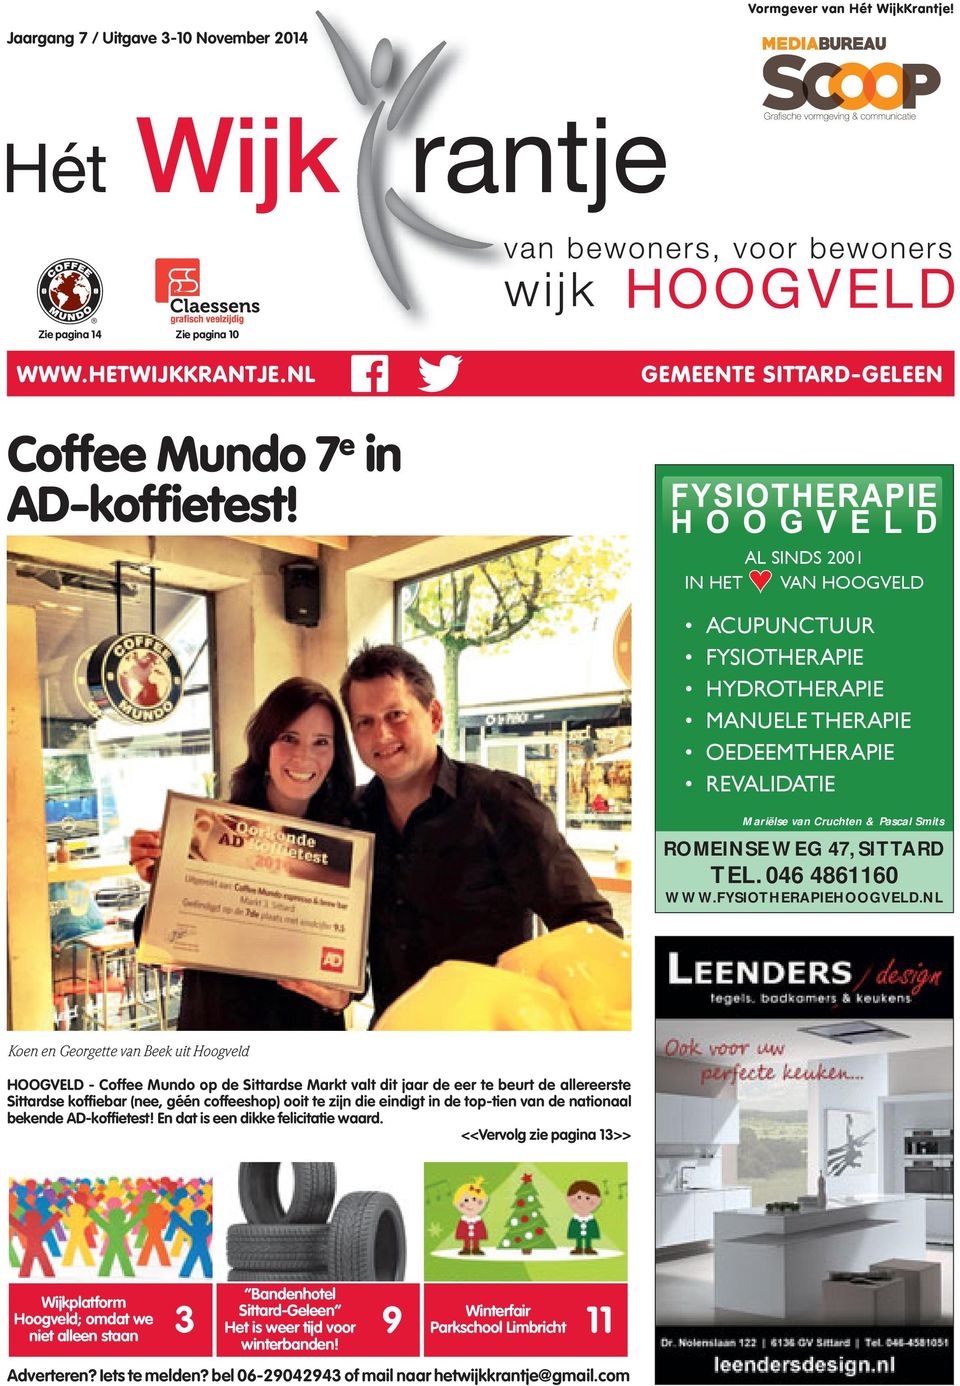 NL Koen en Georgette van Beek uit Hoogveld HOOGVELD - Coffee Mundo op de Sittardse Markt valt dit jaar de eer te beurt de allereerste Sittardse koffi ebar (nee, géén coffeeshop) ooit te zijn die